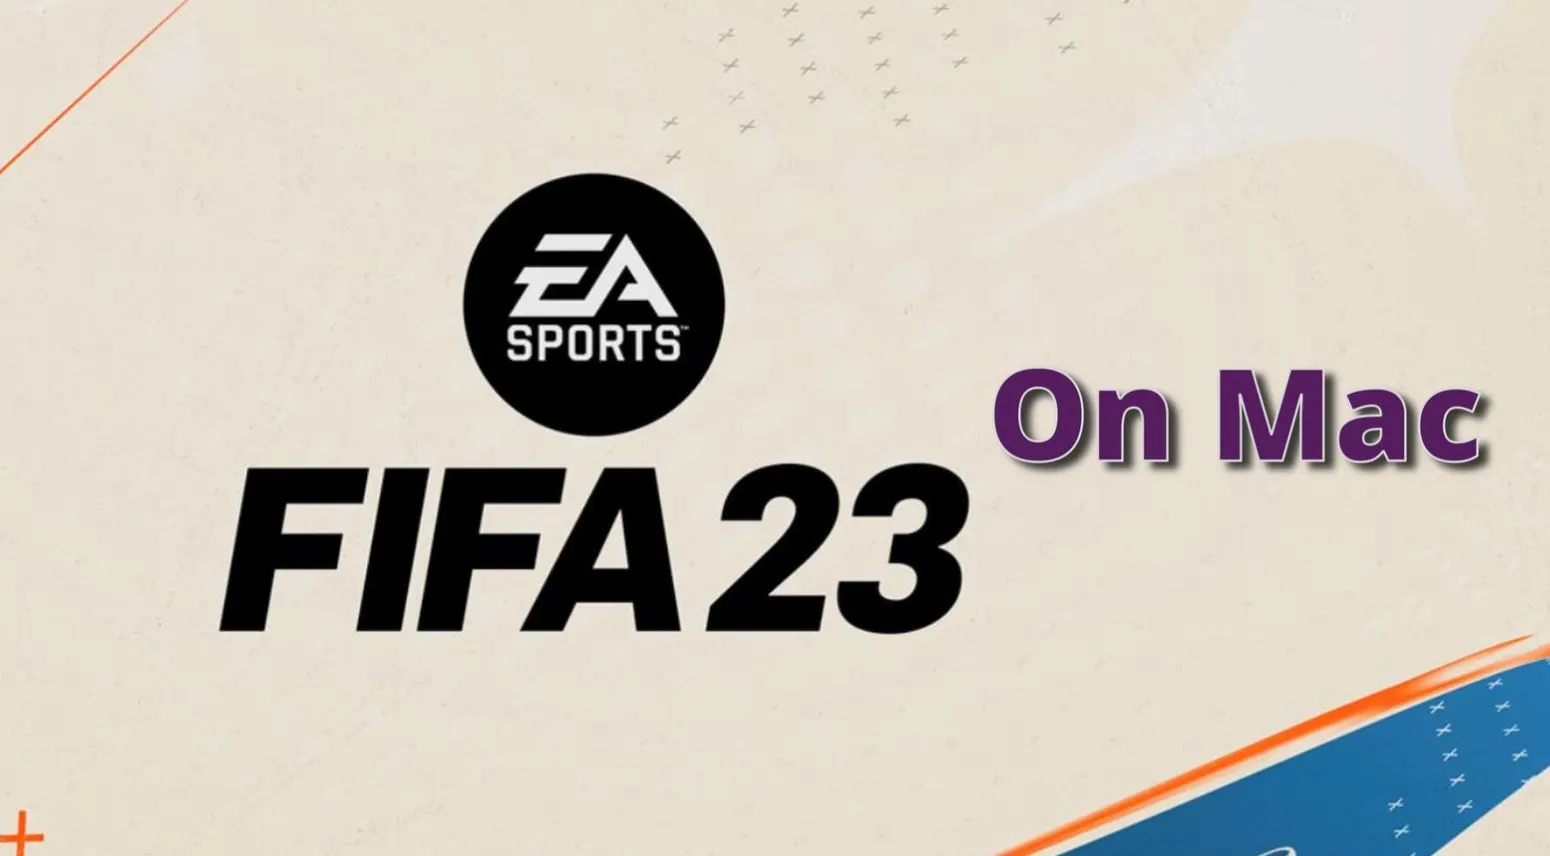 FIFA 23 on Mac